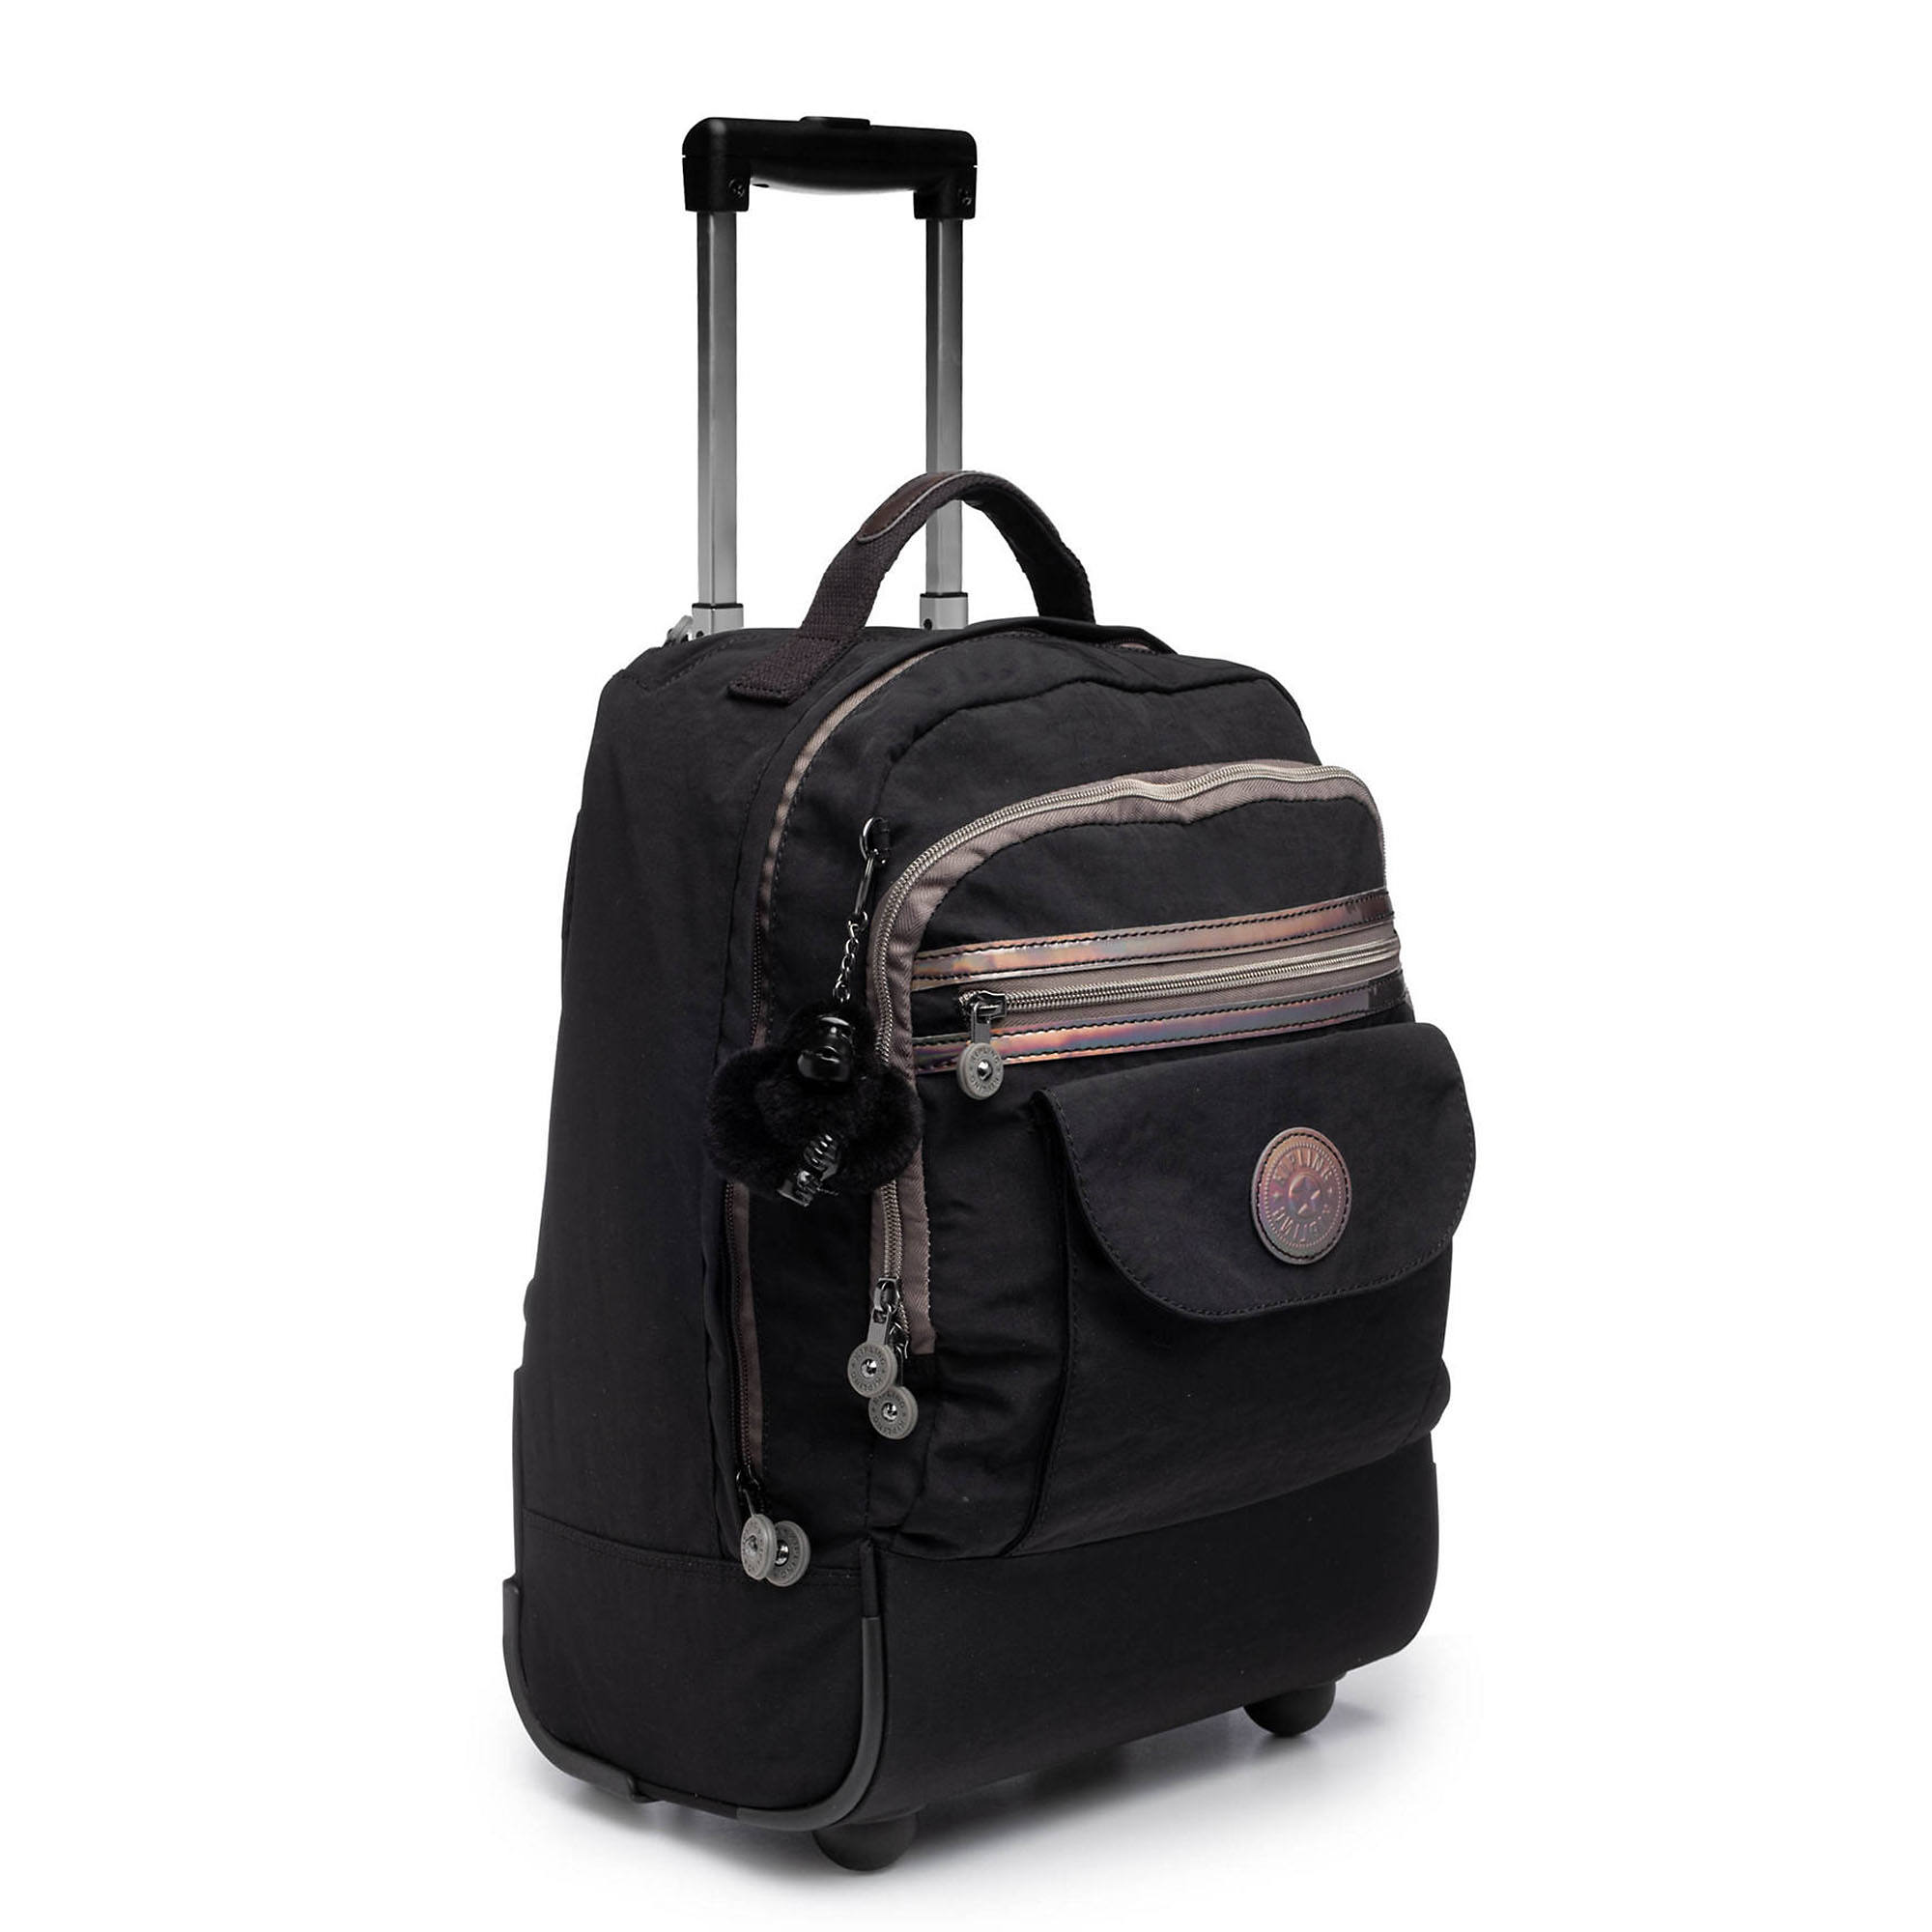 Kipling Sanaa Large Rolling Backpack | eBay